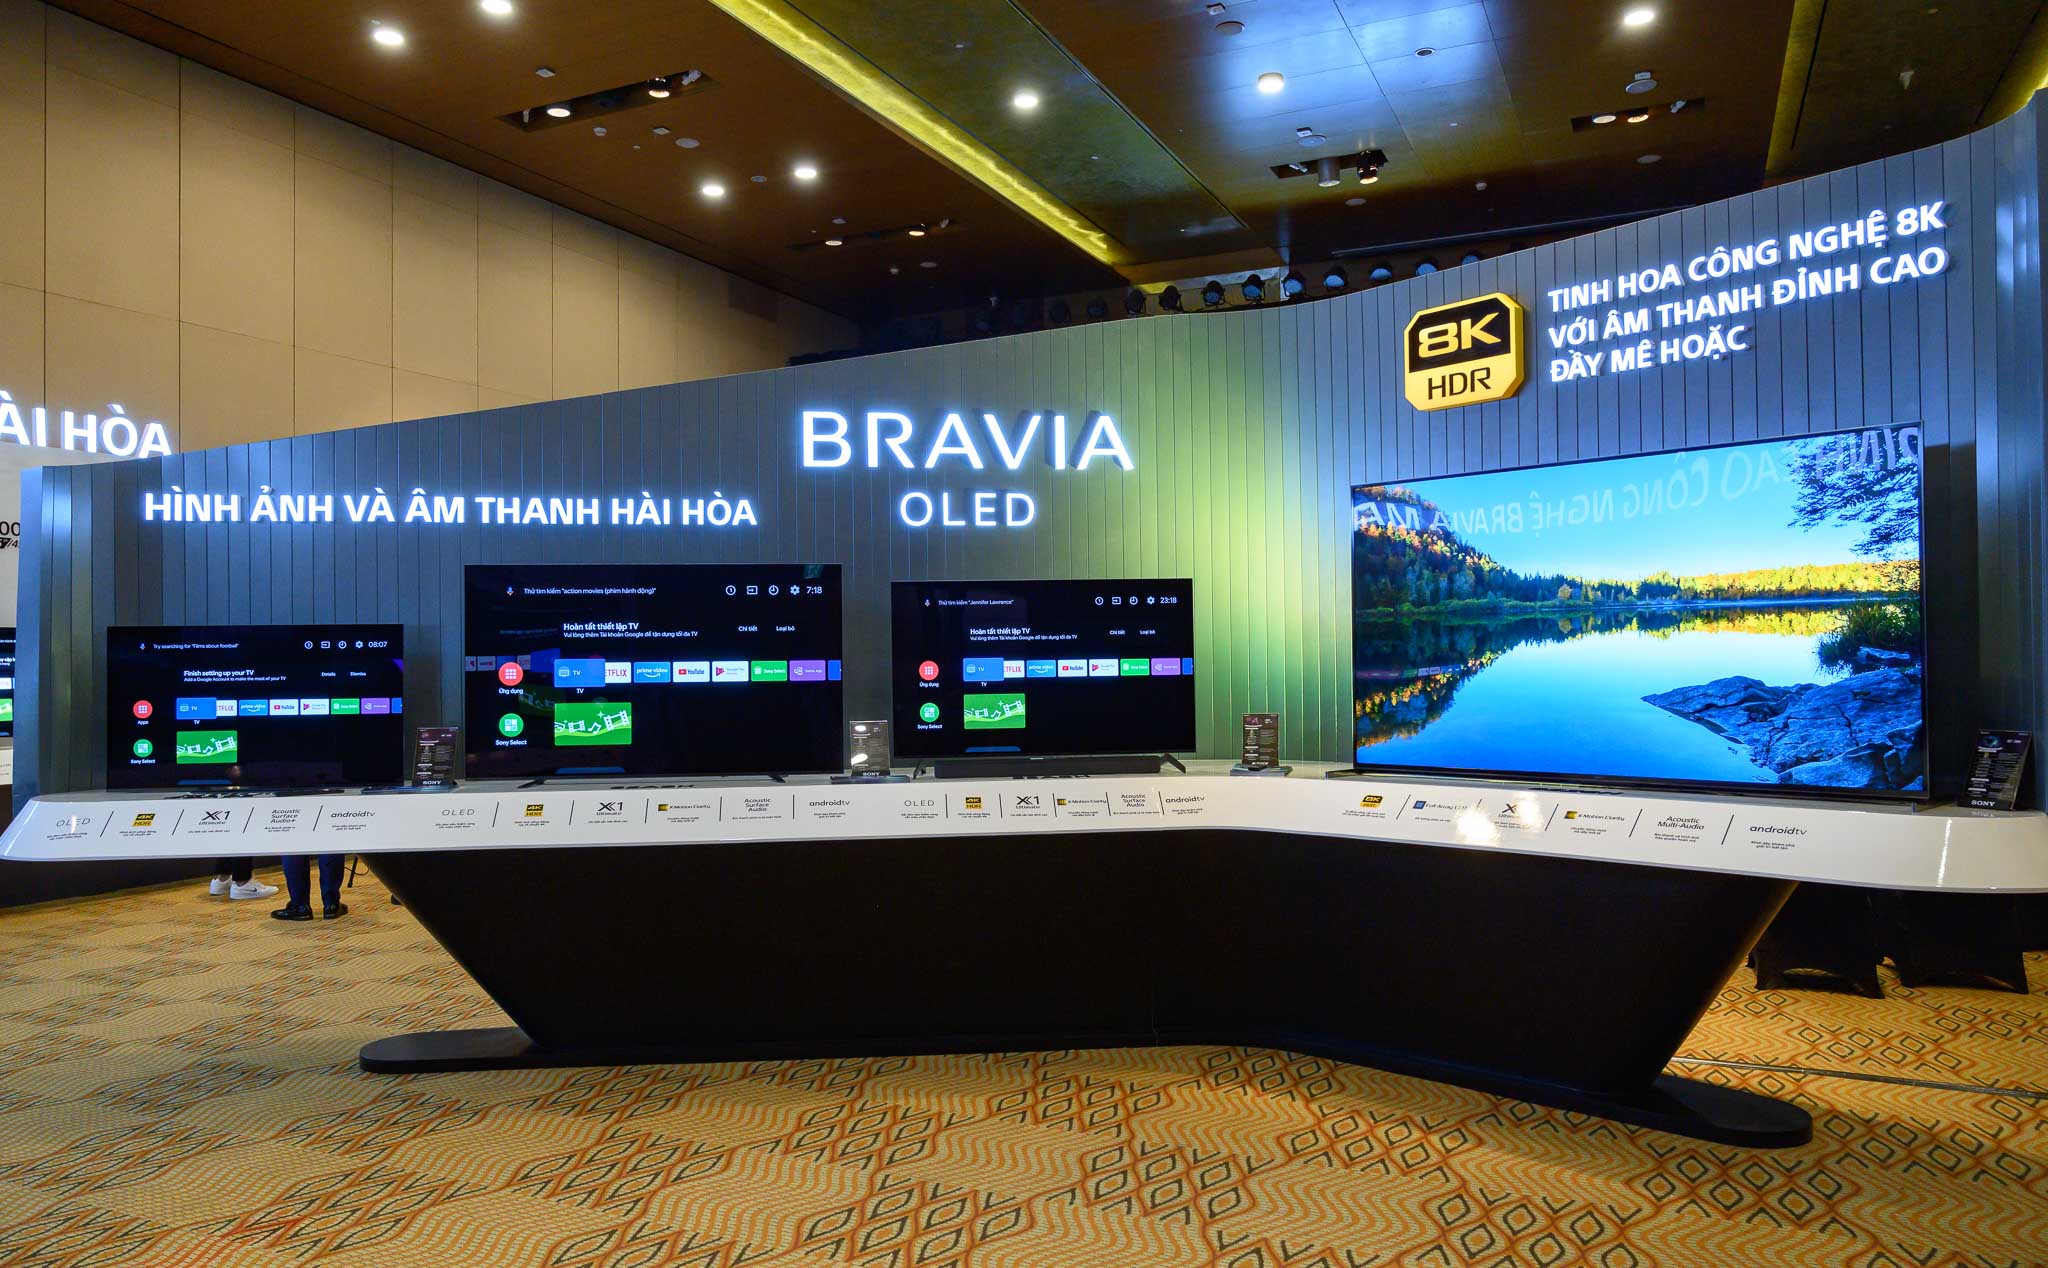 Sony ra mắt TV BRAVIA 8K tại Việt Nam giá 263 triệu, cùng với loại TV BRAVIA 2020